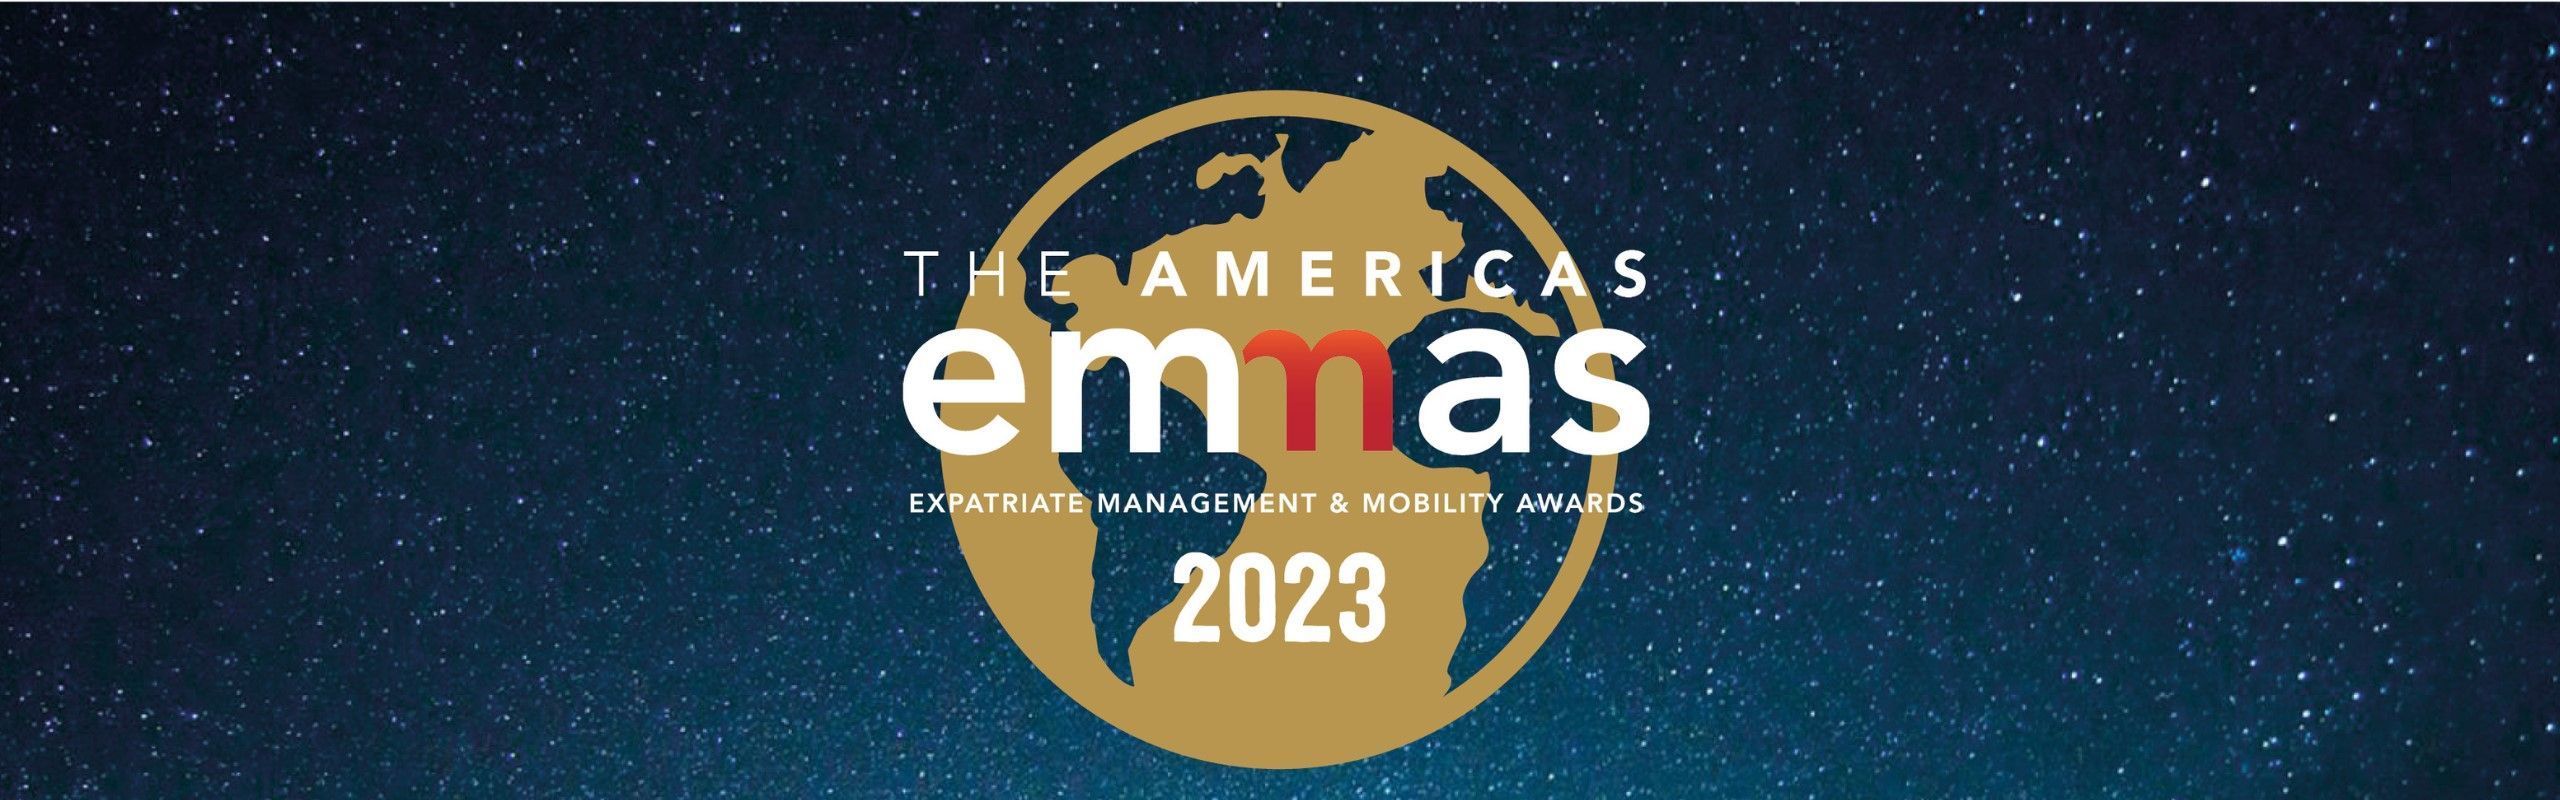 FEM Americas Awards 2023